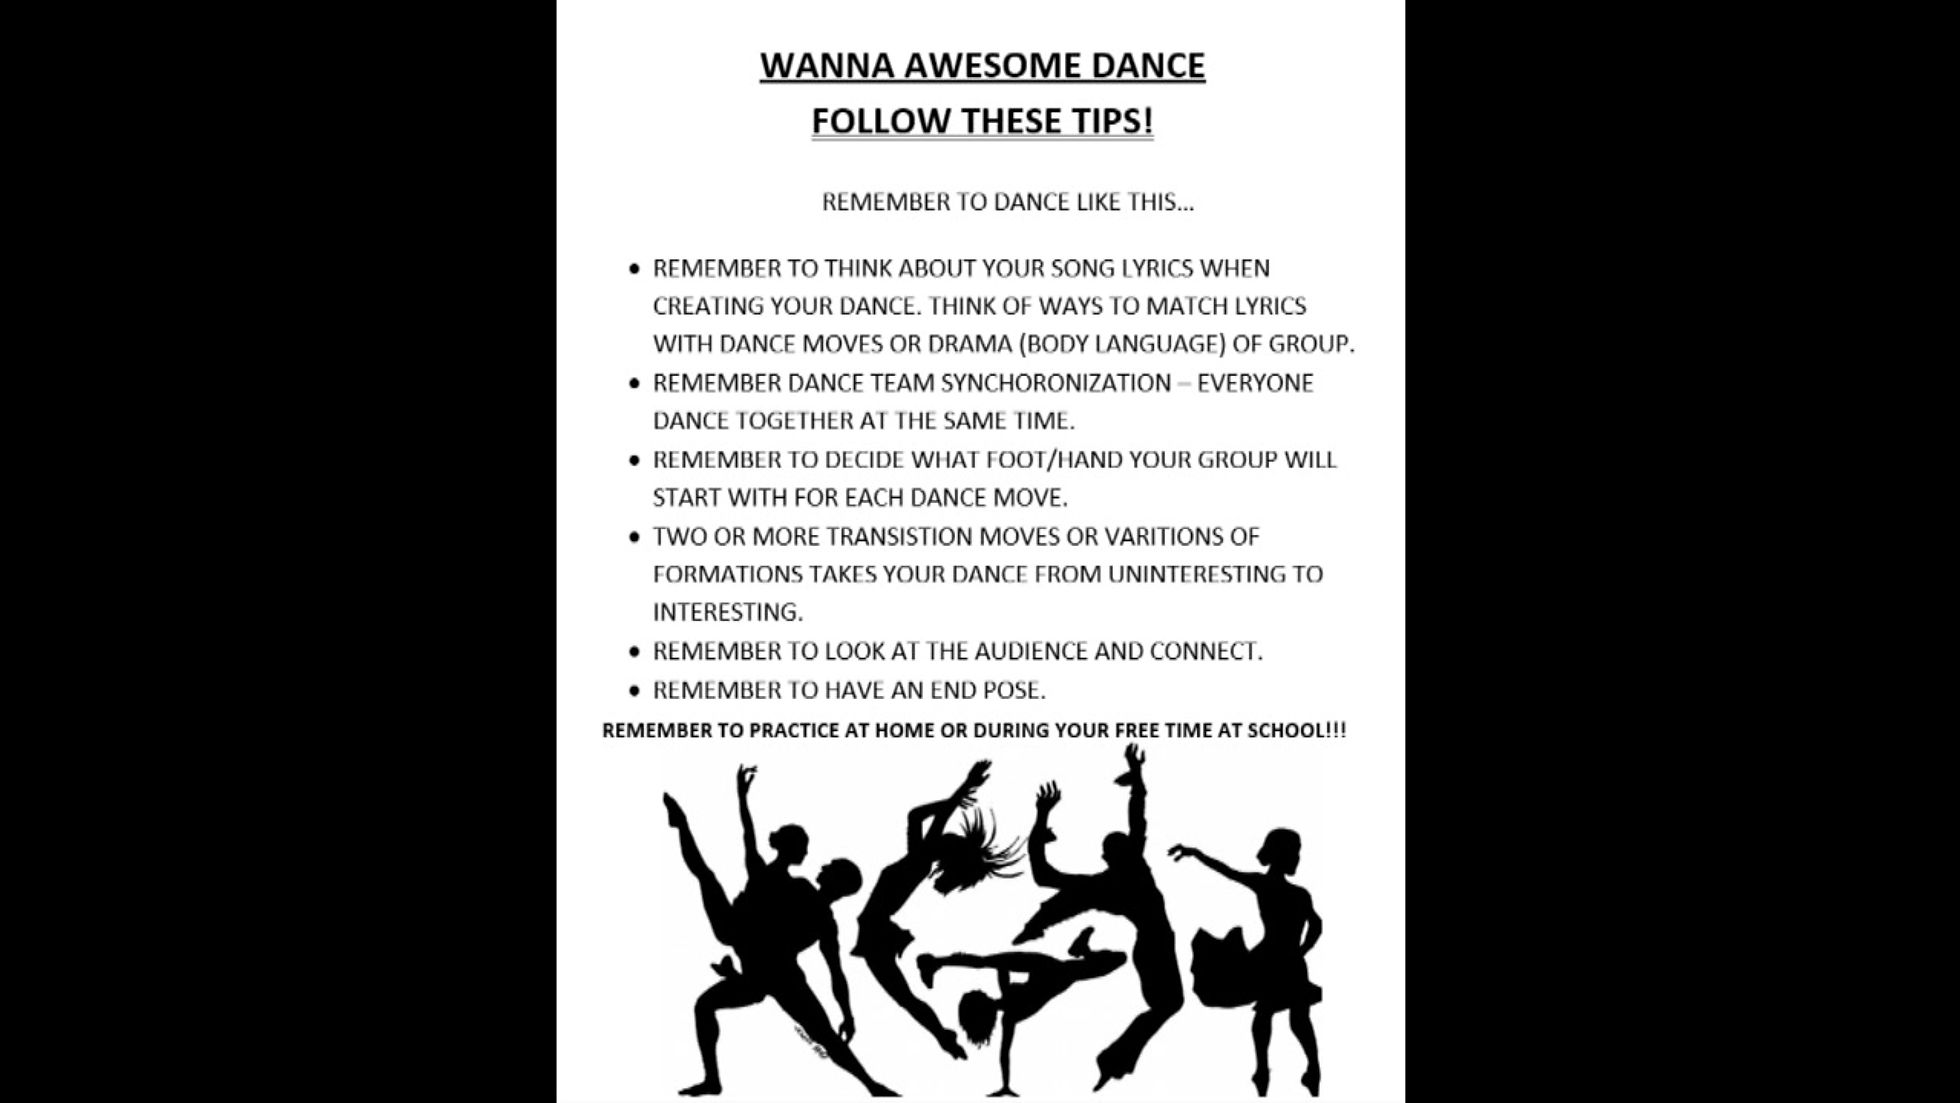 Creative Dance Wanna Awesome Dance